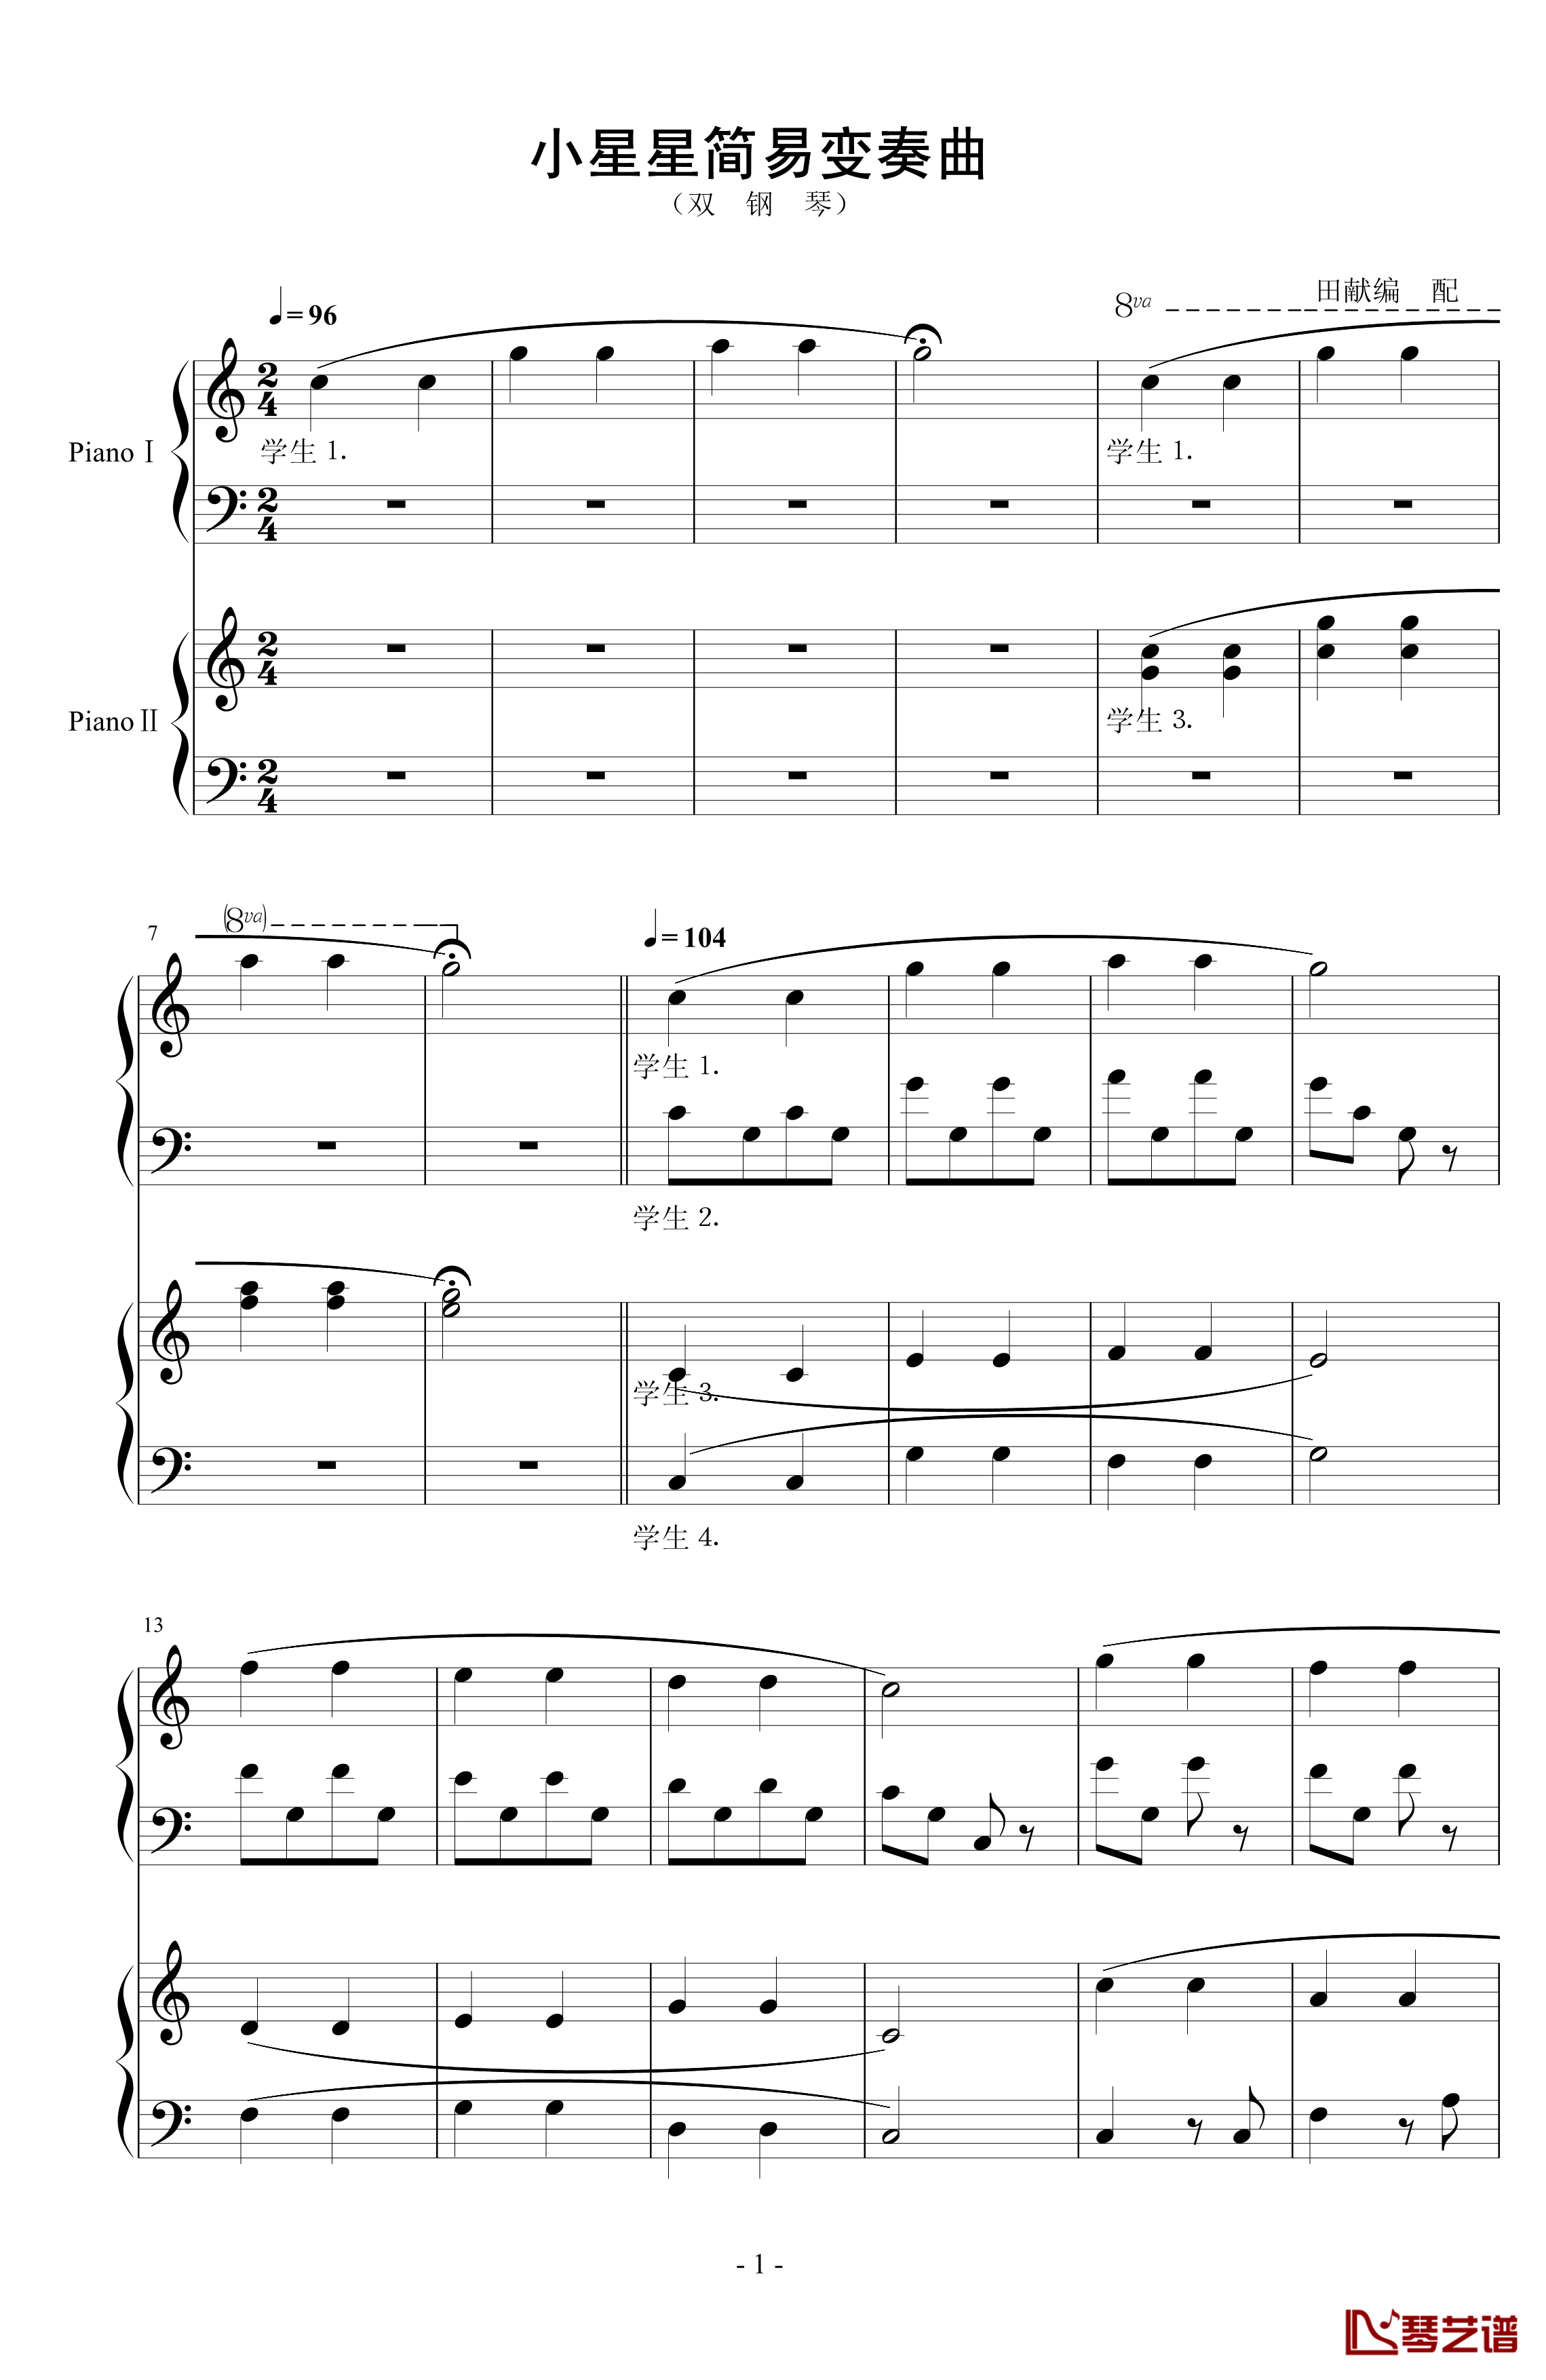 小星星简易变奏曲钢琴谱-双钢琴-莫扎特1